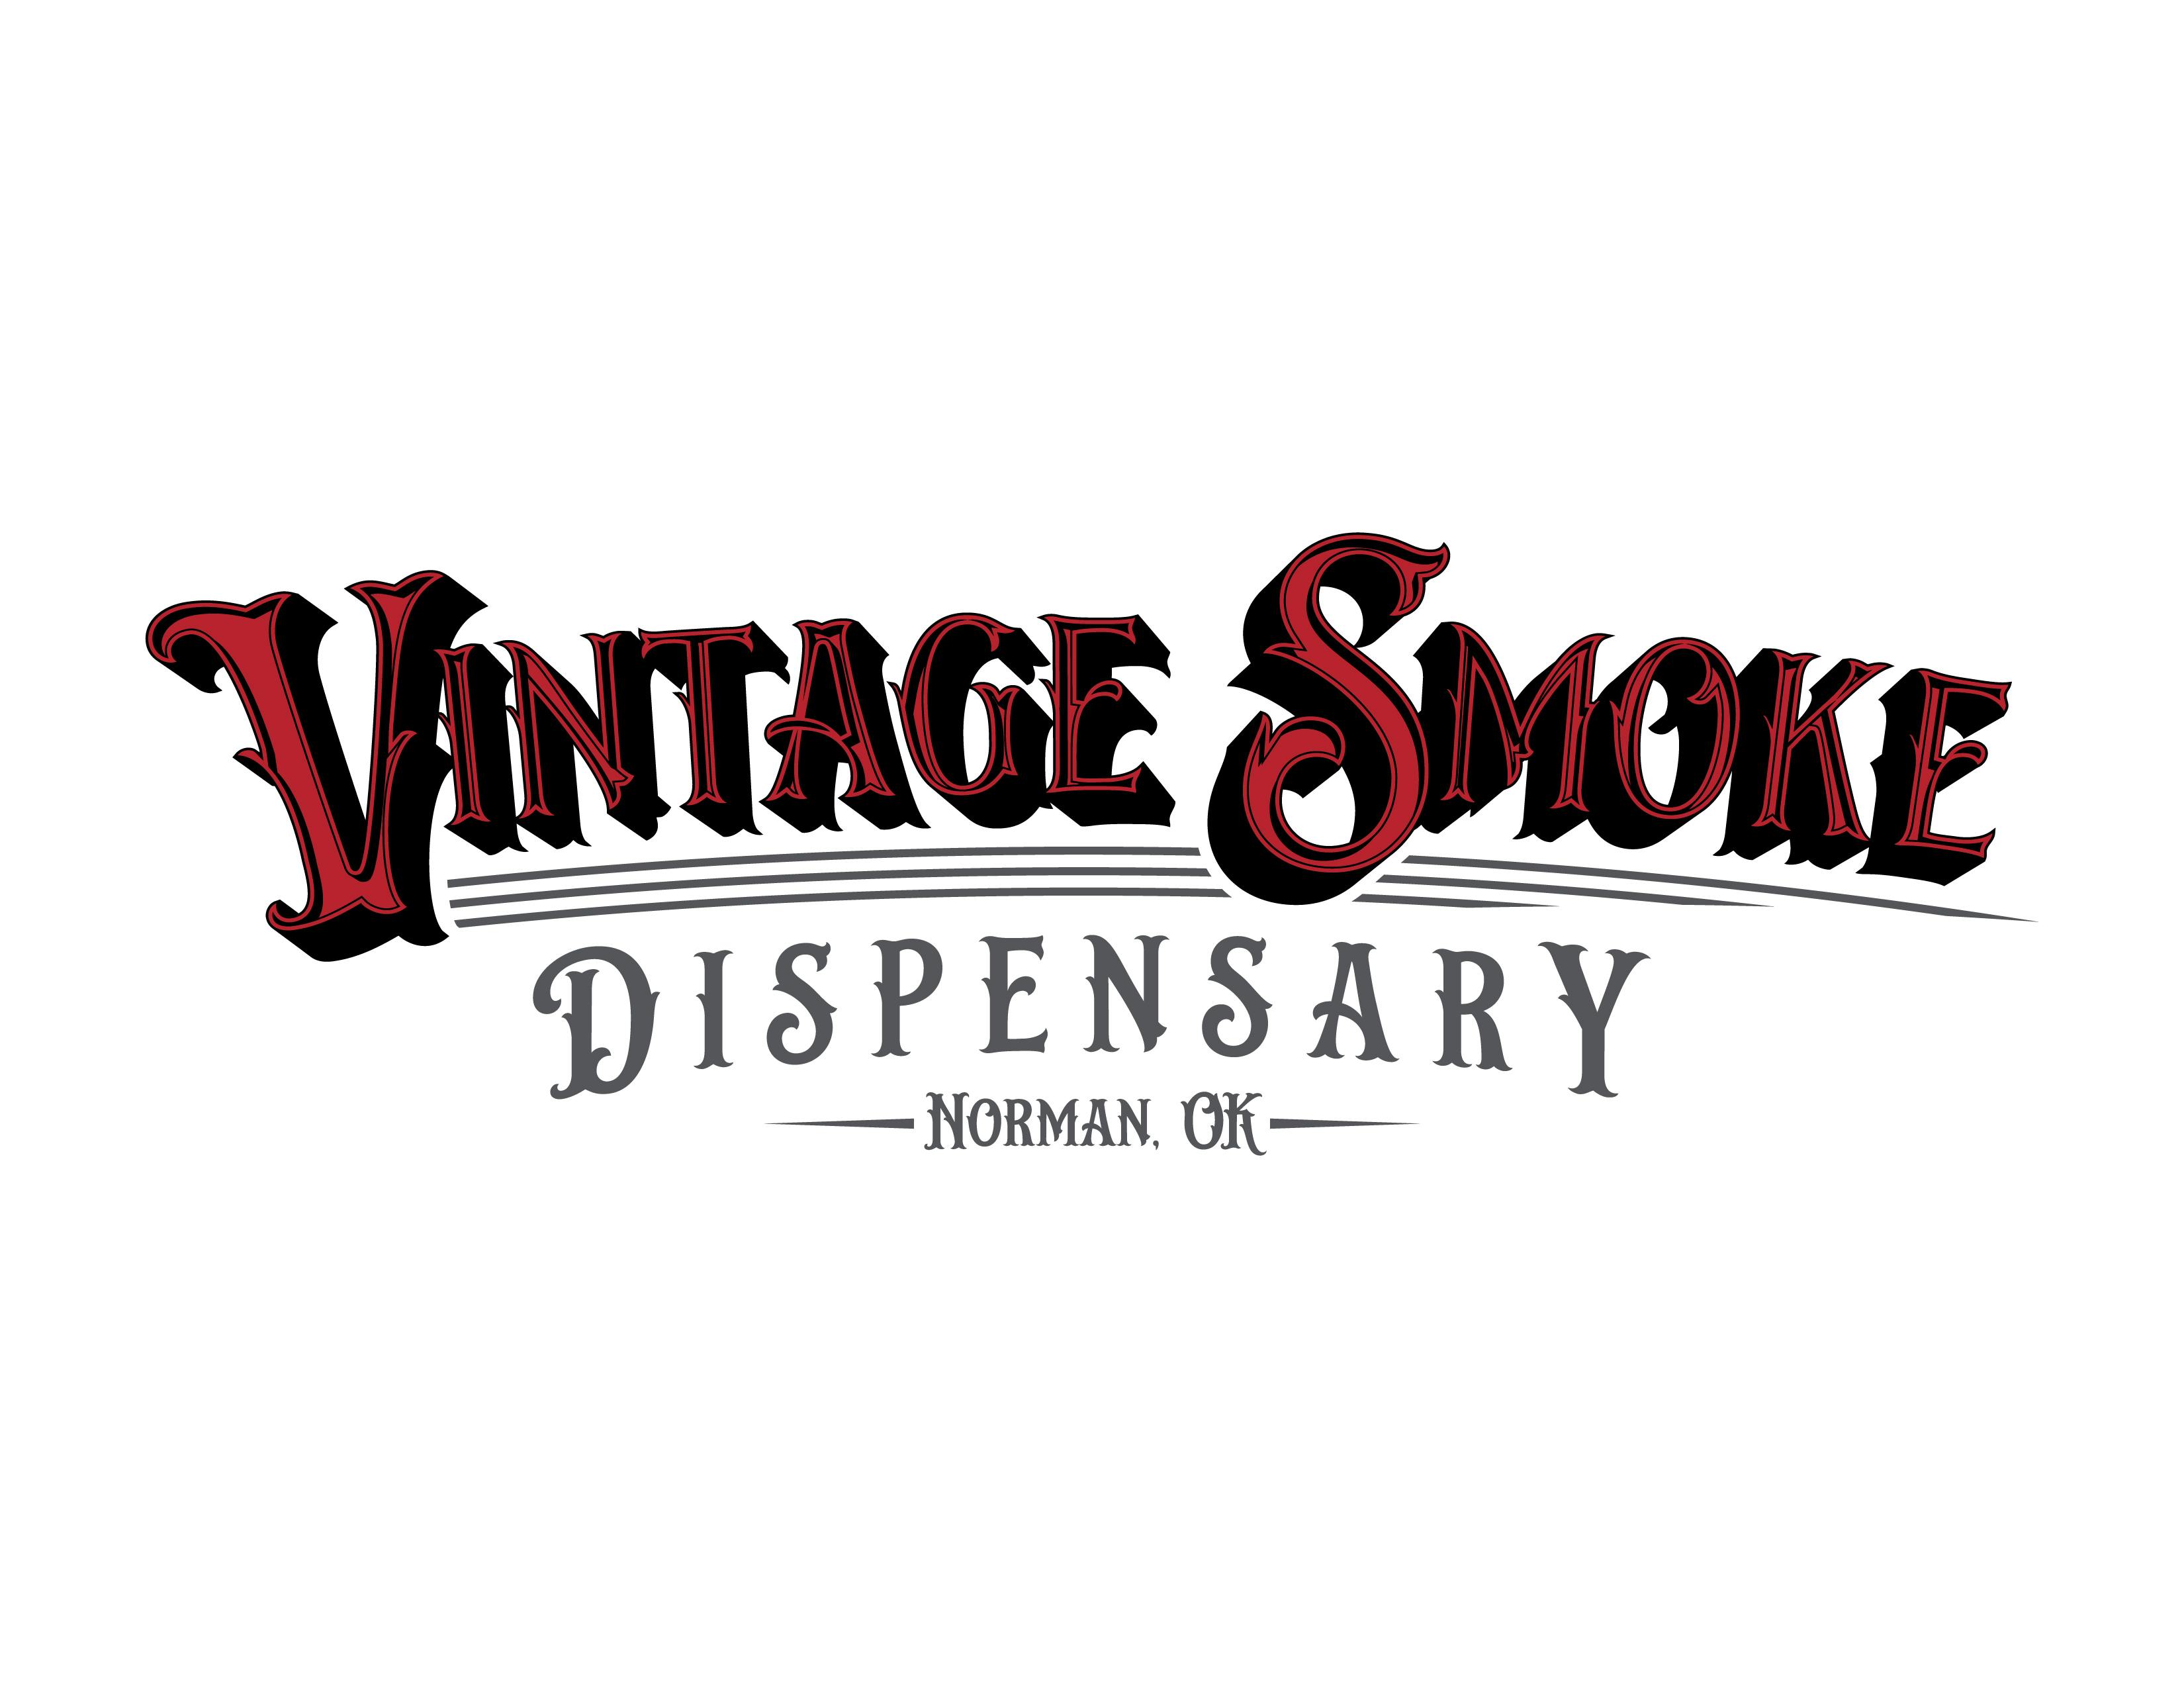 The Vintage Smoke Dispensary logo